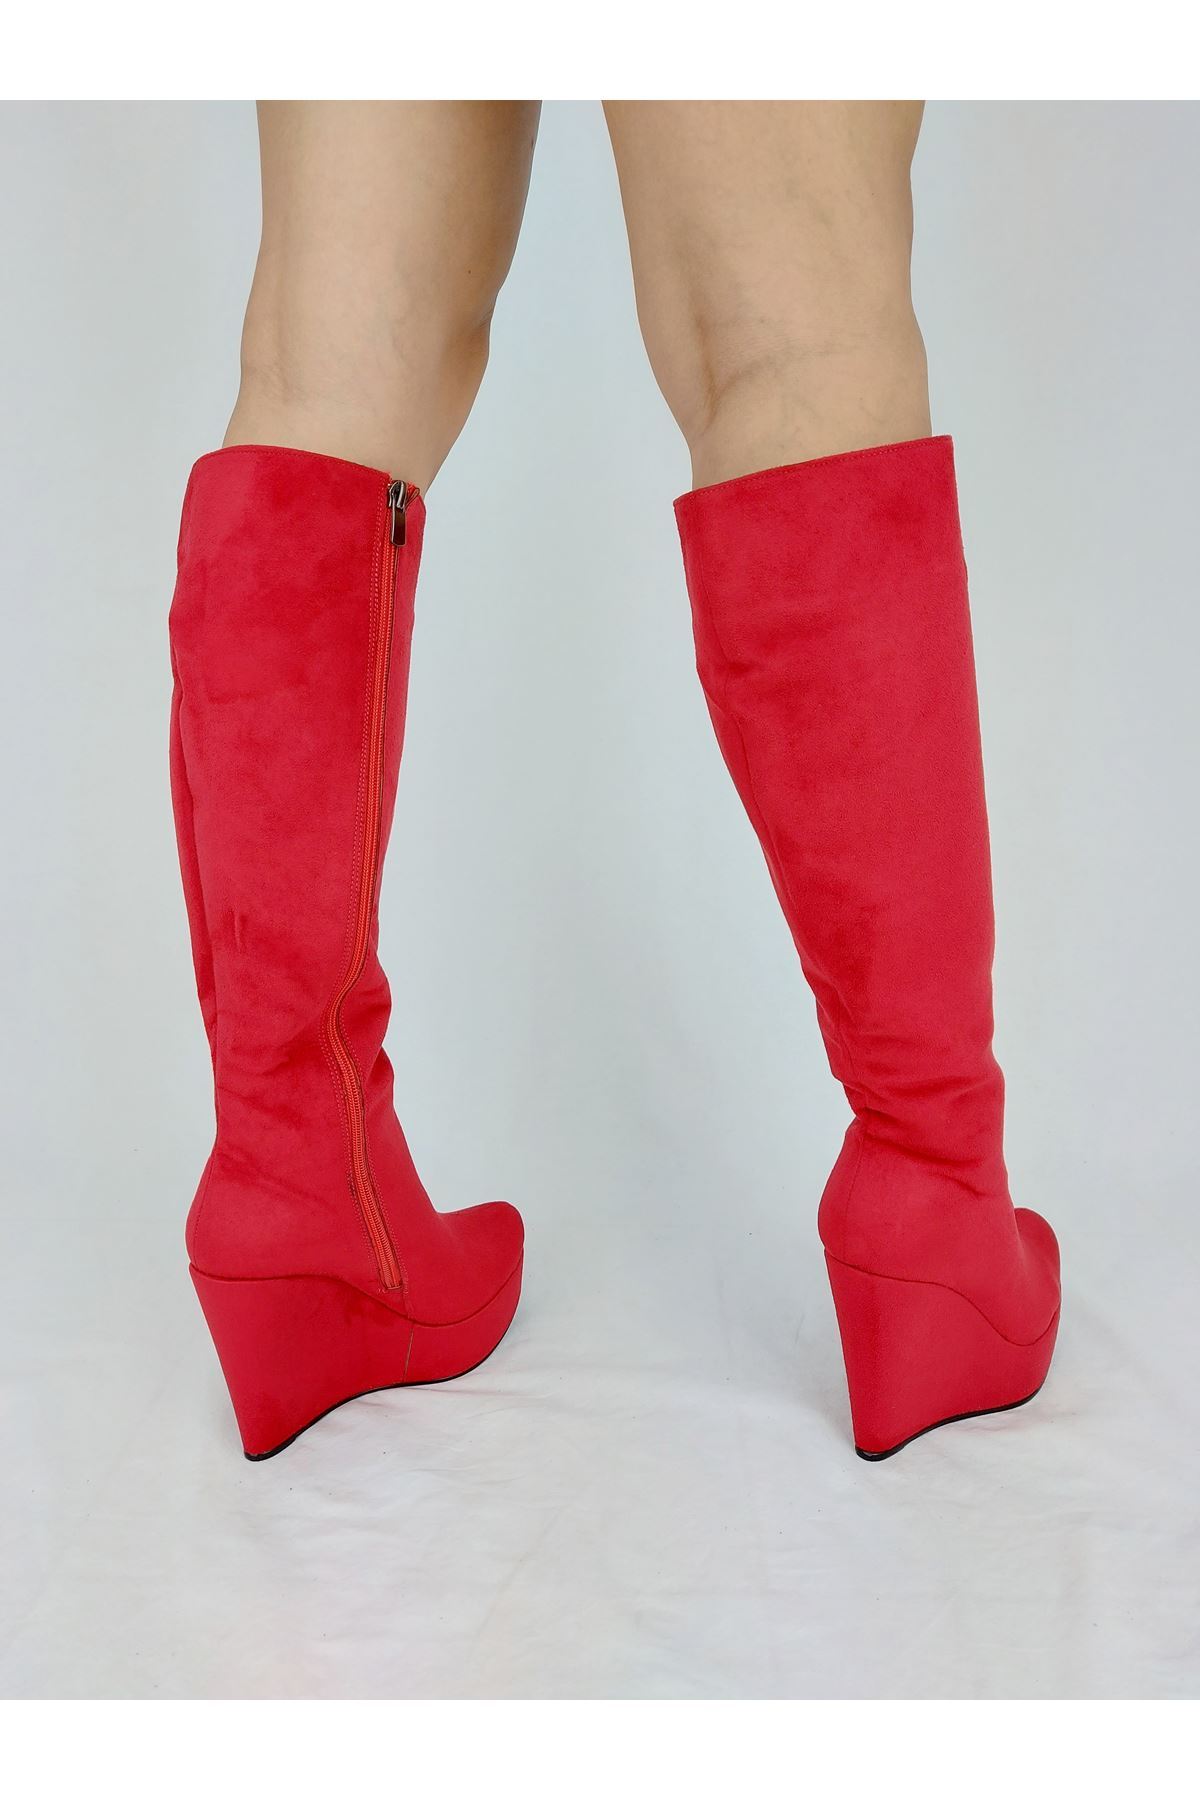 Kelly Kırmızı Süet Dolgu Topuklu Kadın Çizme